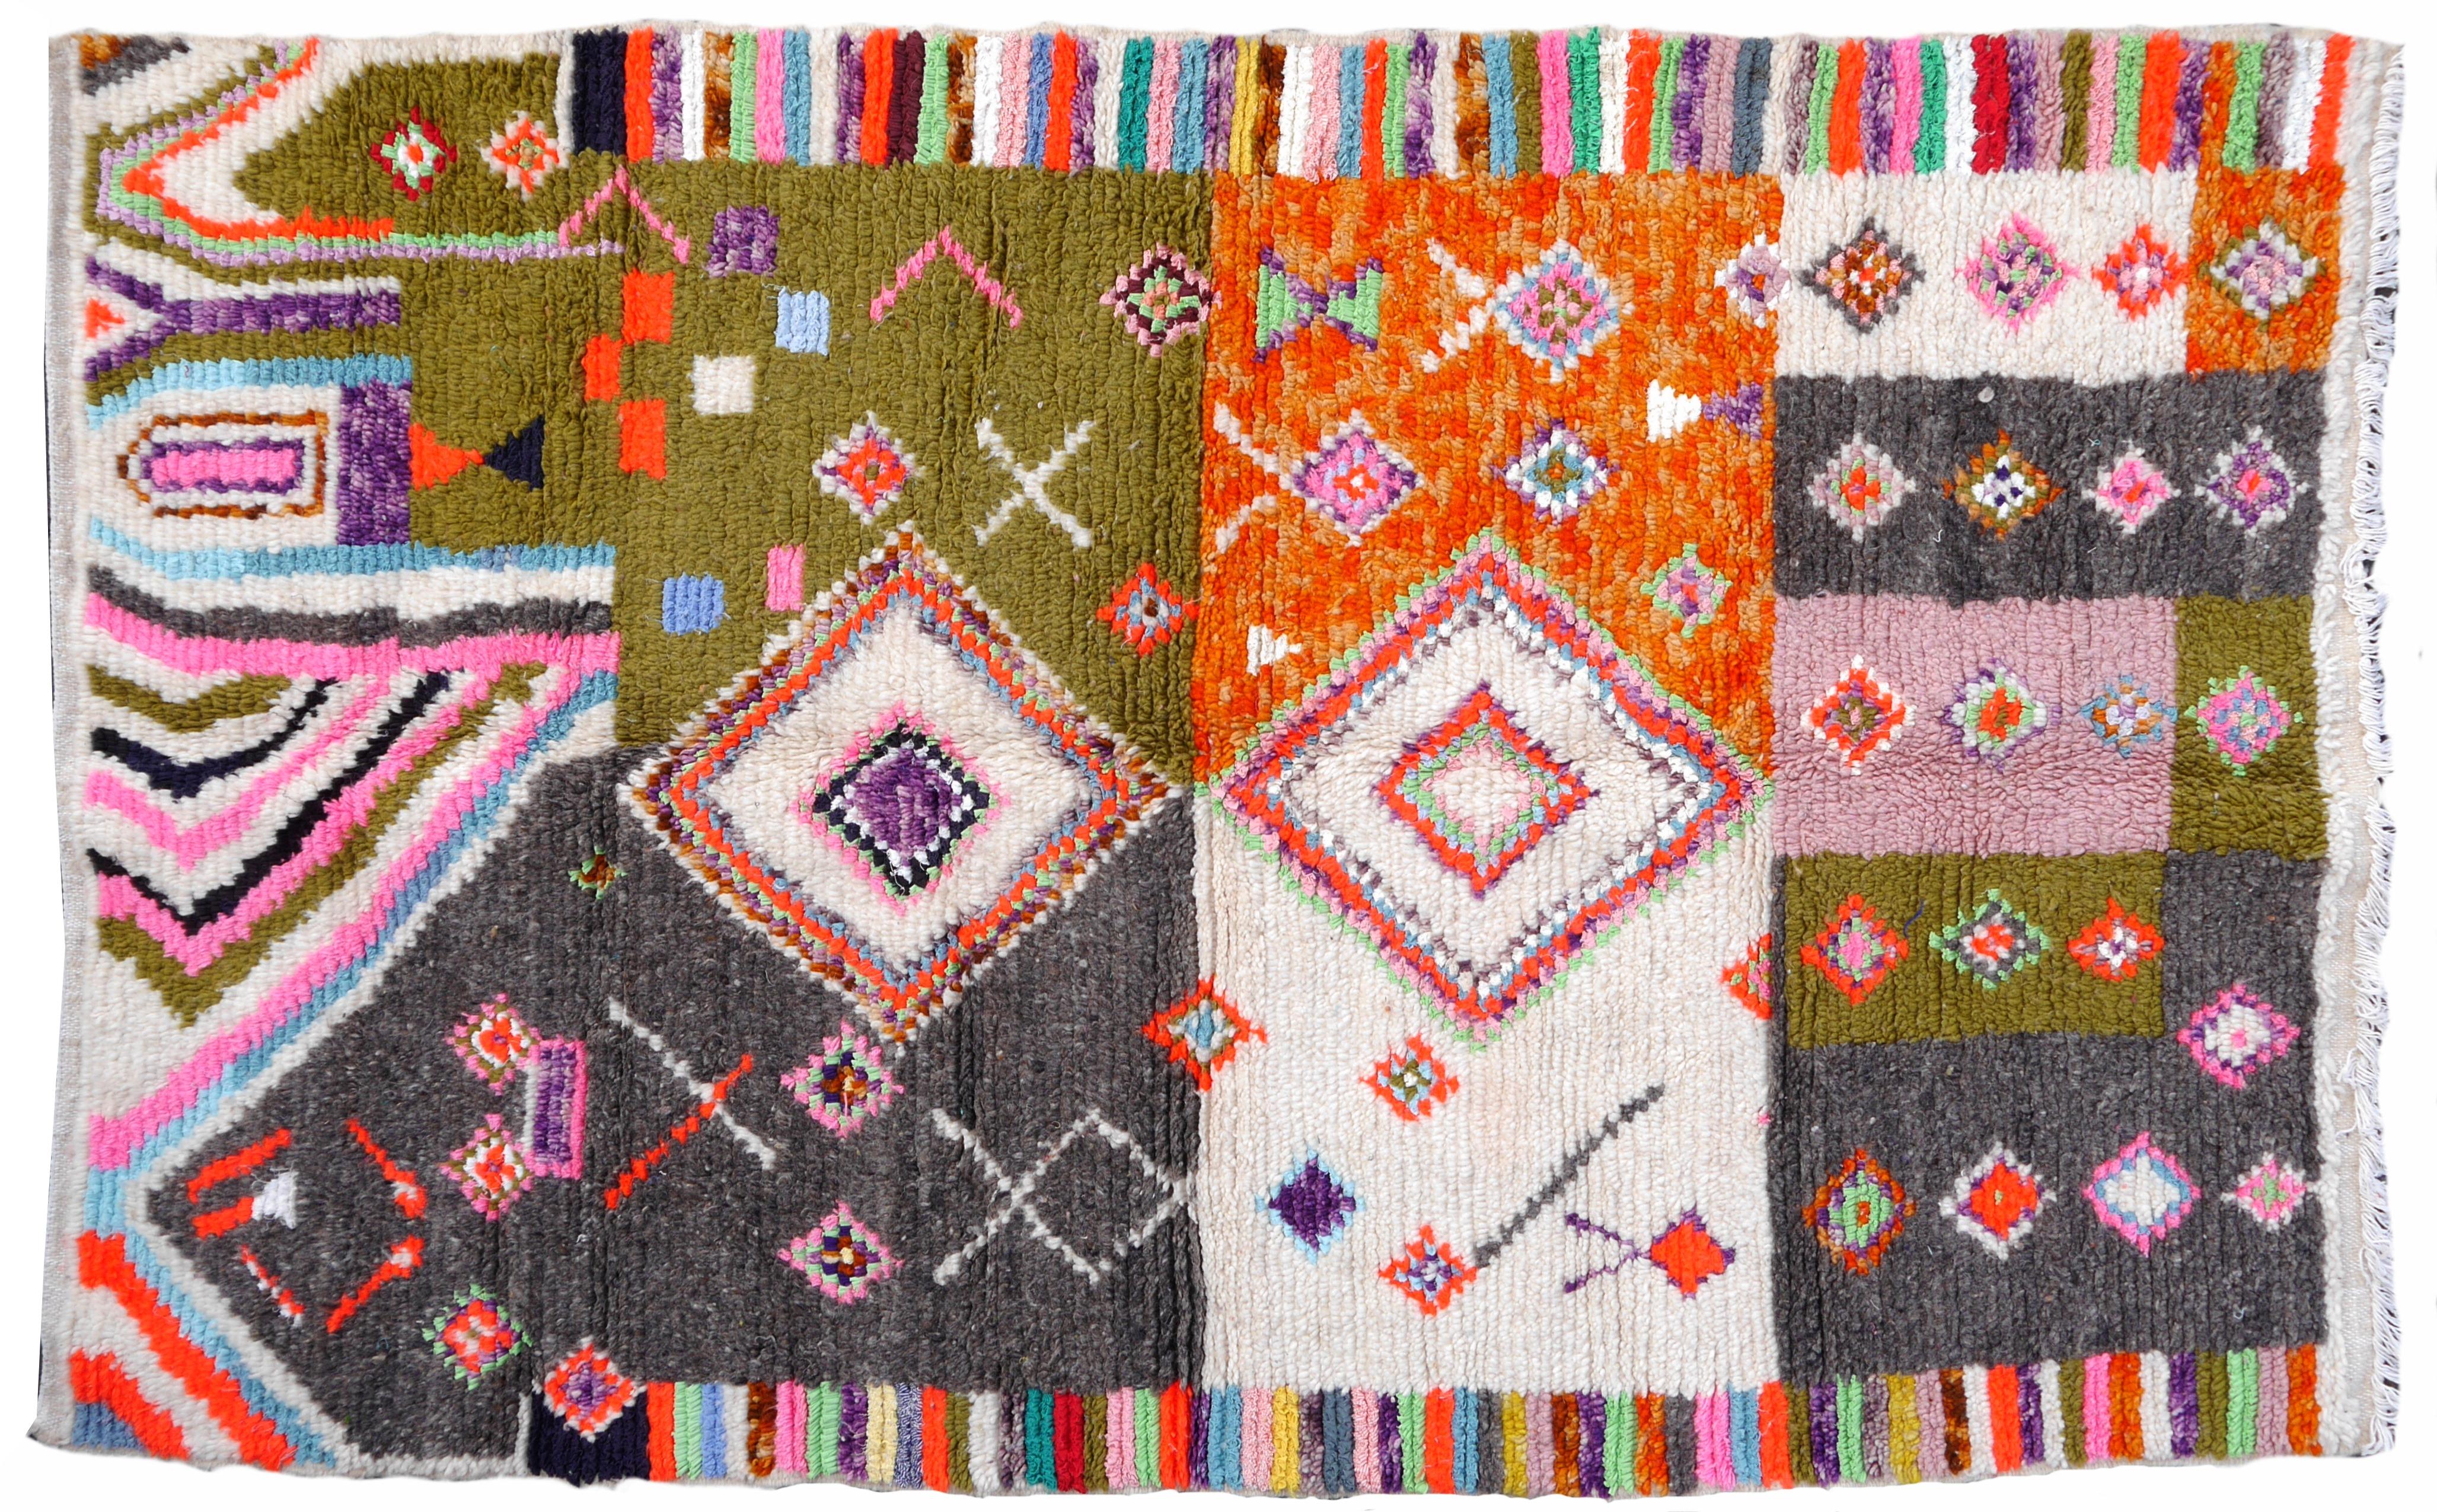 Berberteppiche werden hauptsächlich in Marokko, Tunesien und Algerien hergestellt. Größter Produzent sind die Stammes- und Nomadenvölker der Berber in Marokko. In verschiedenen Gebieten entstehen sehr schöne Kunstwerke. 

Dieser Teppich wurde in